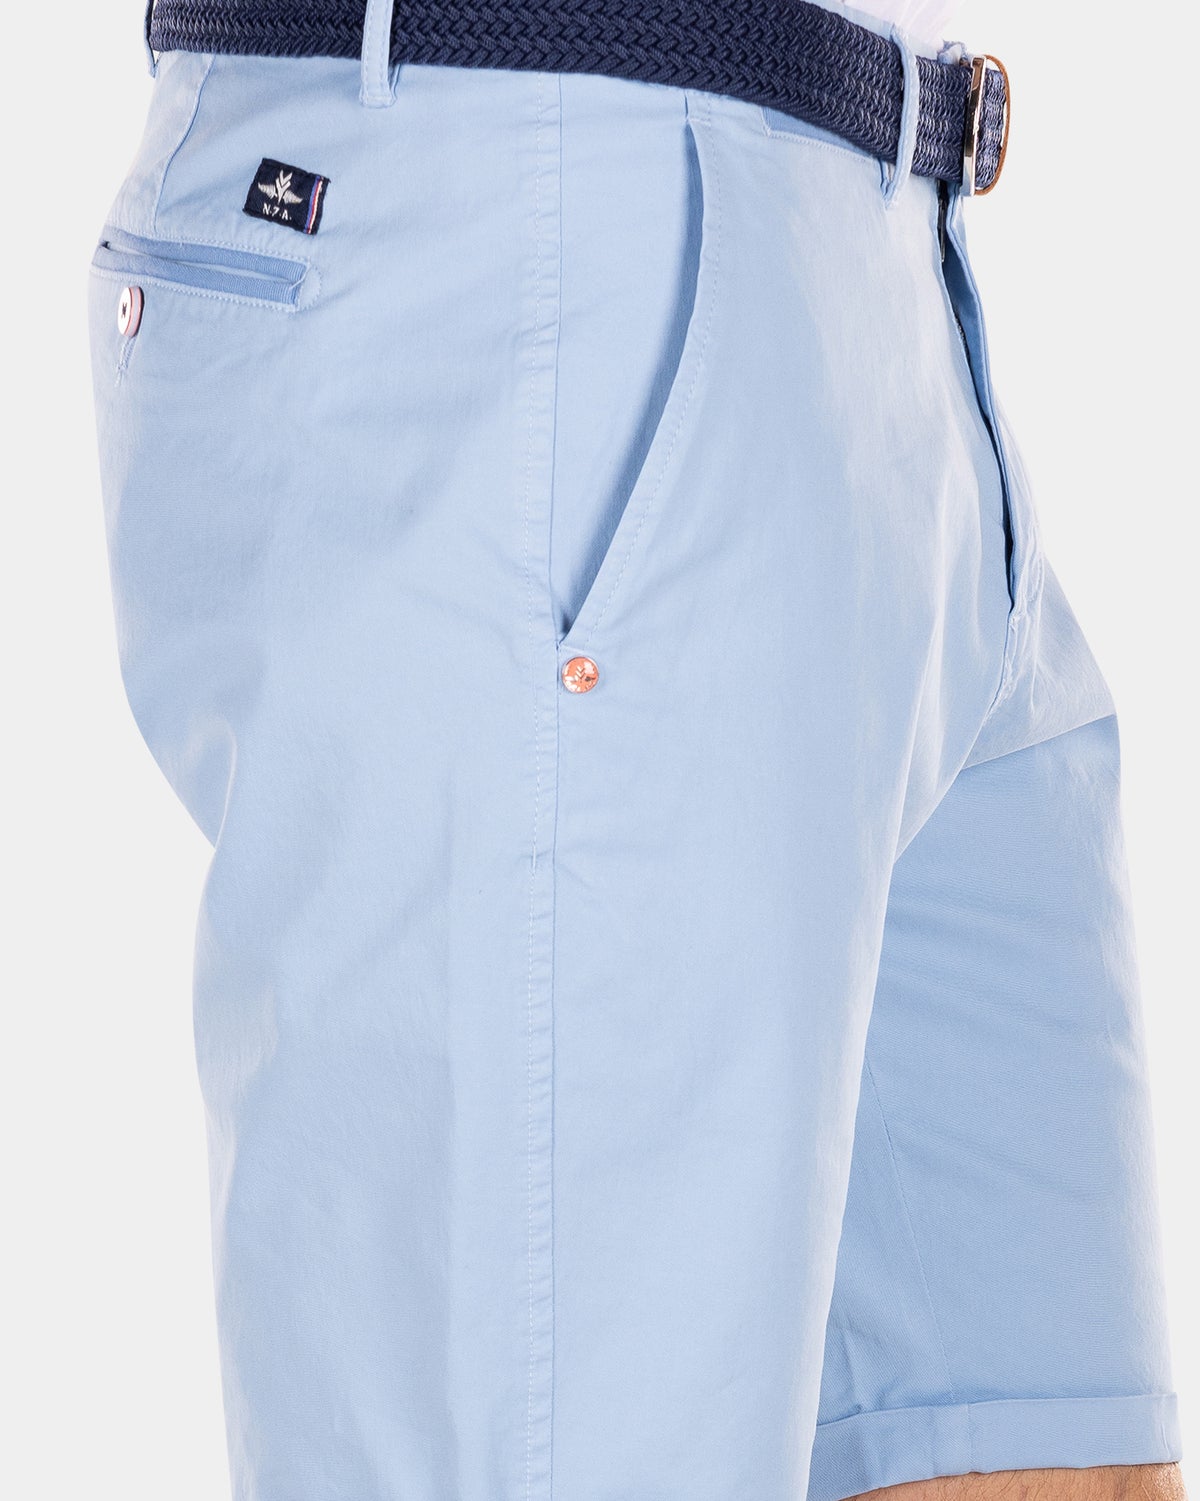 Cotton chino shorts - Universal Blue